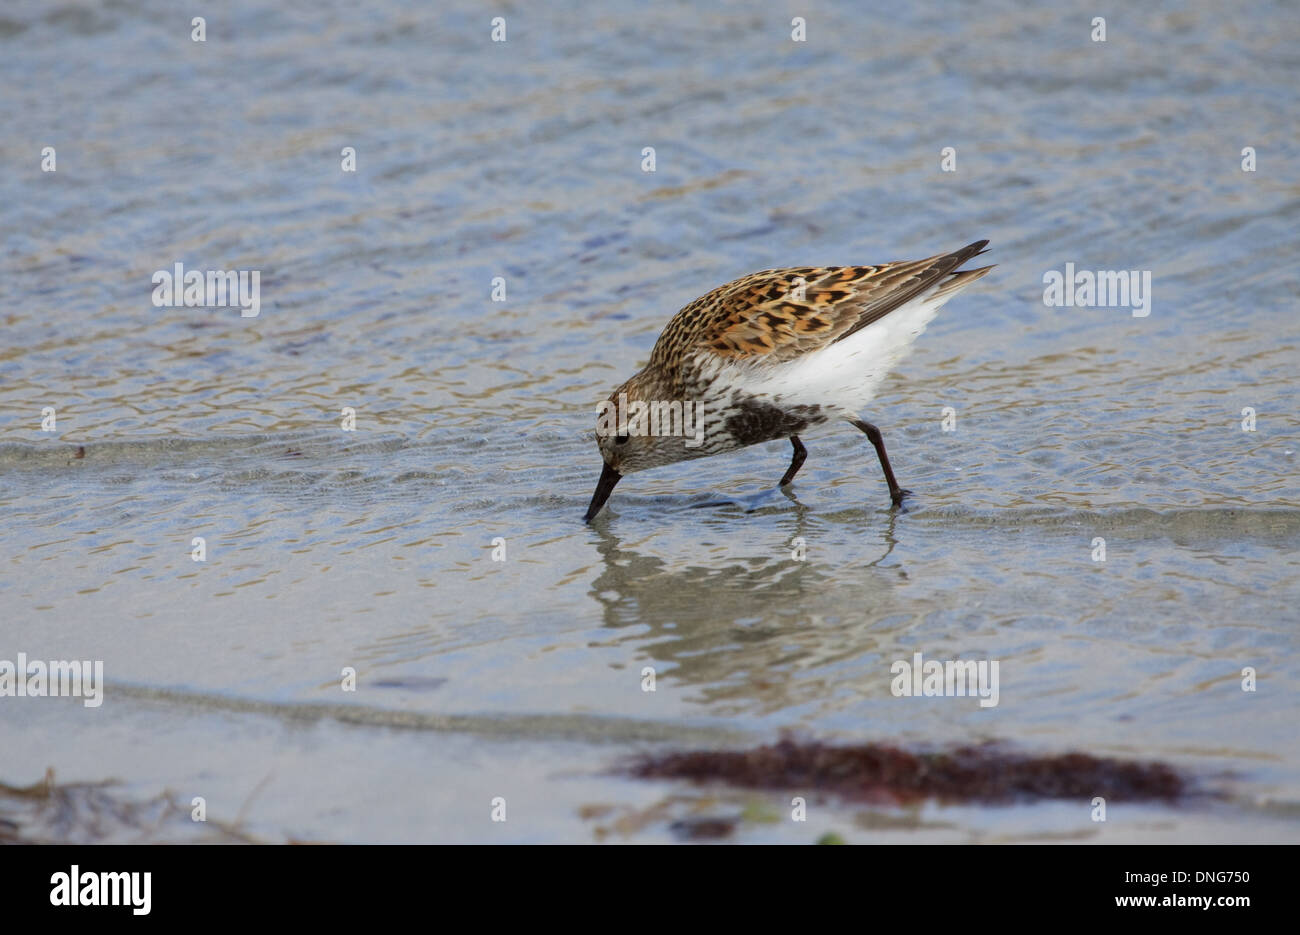 Dunlin, Calidris alpina, a wading bird on the shore Stock Photo